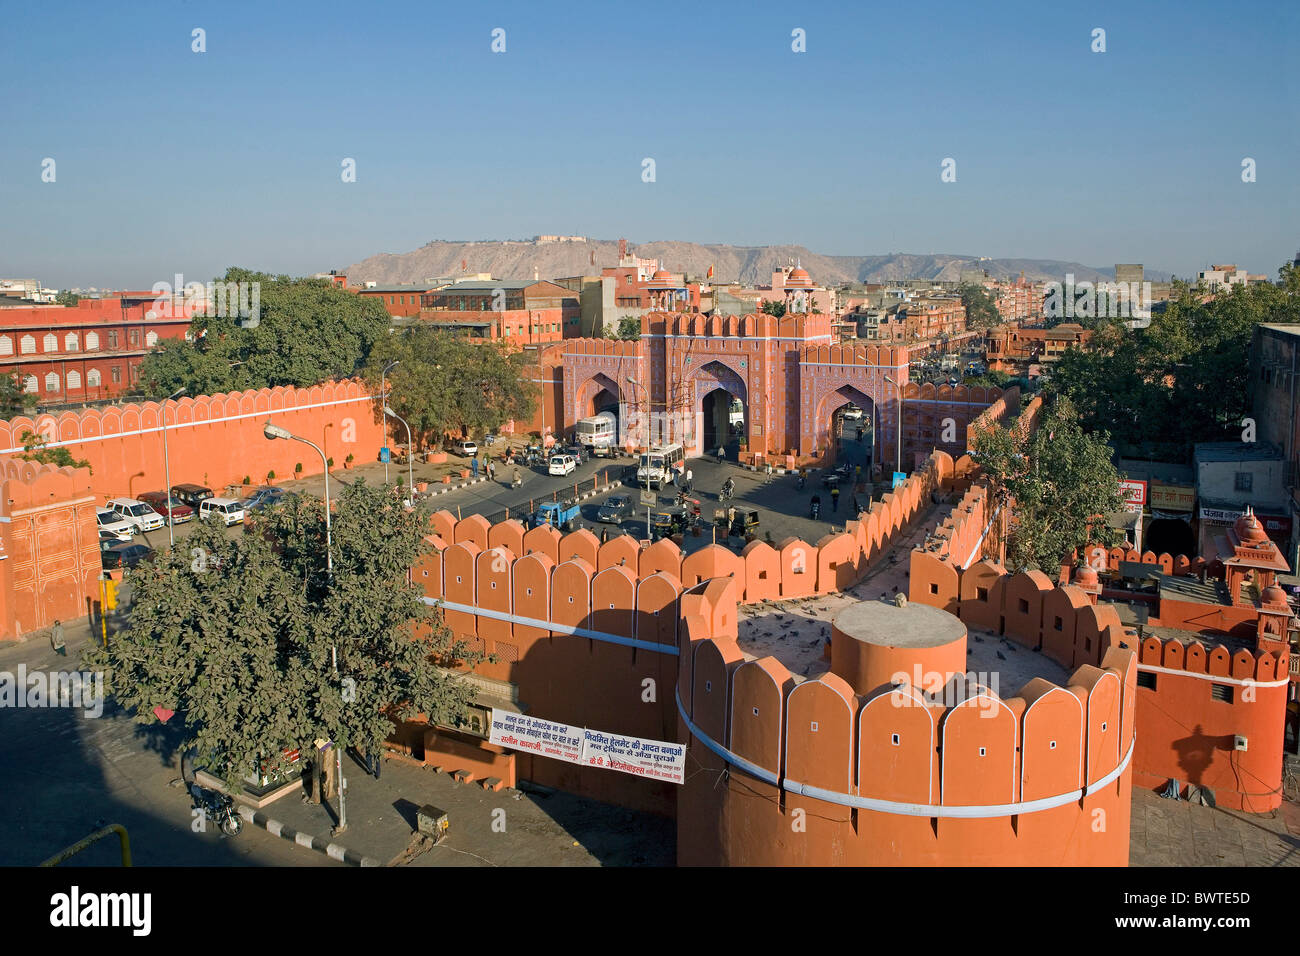 Inde Jaipur ville État du Rajasthan Sanganeri Gate Asia travel Janvier 2008 vieux murs historiques ville archit Banque D'Images